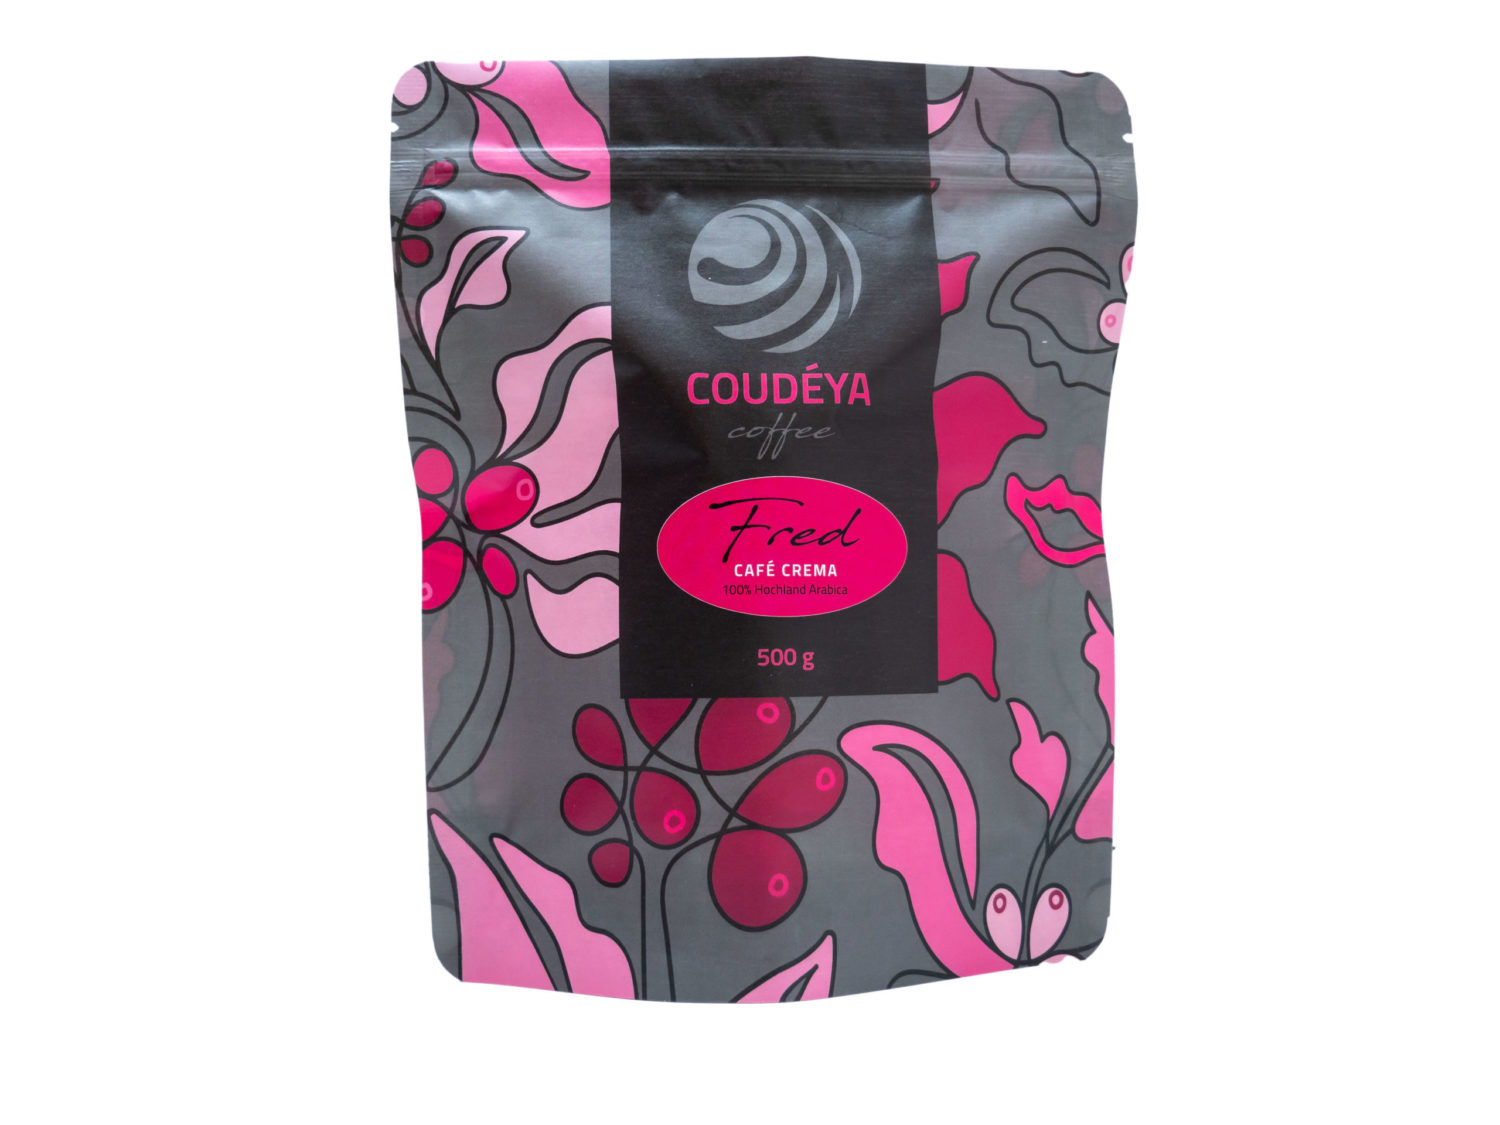 FRED - Röstfrischer Kaffee von Coudéya Coffee